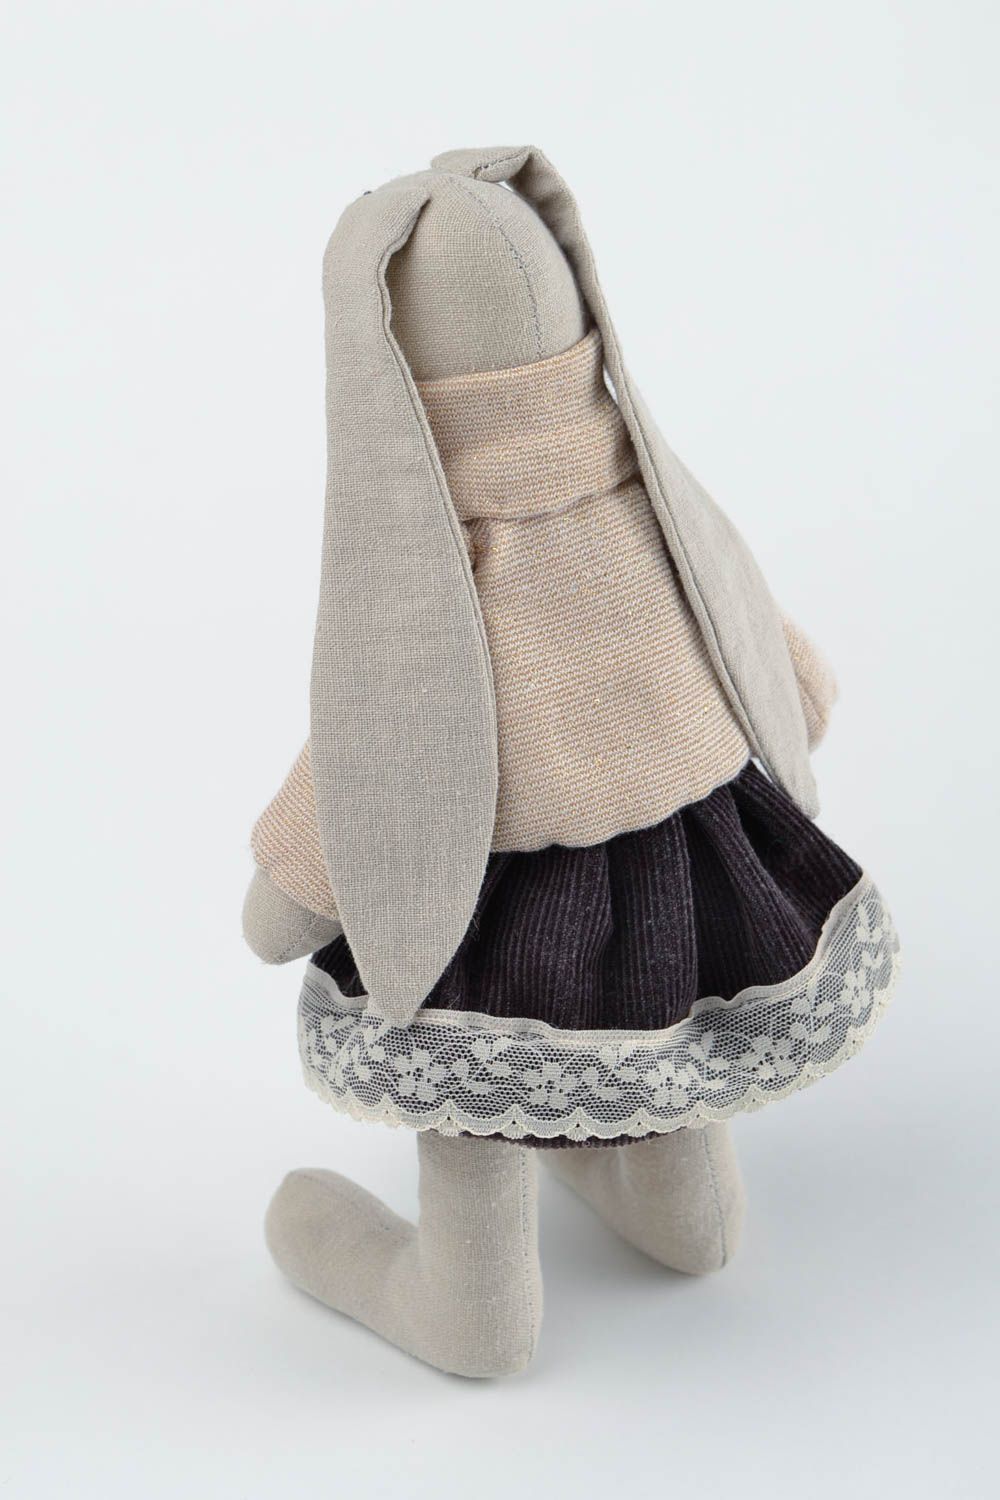 Peluche Lapin en tissu faite main en pull et jupe décorative Cadeau pour enfant photo 4